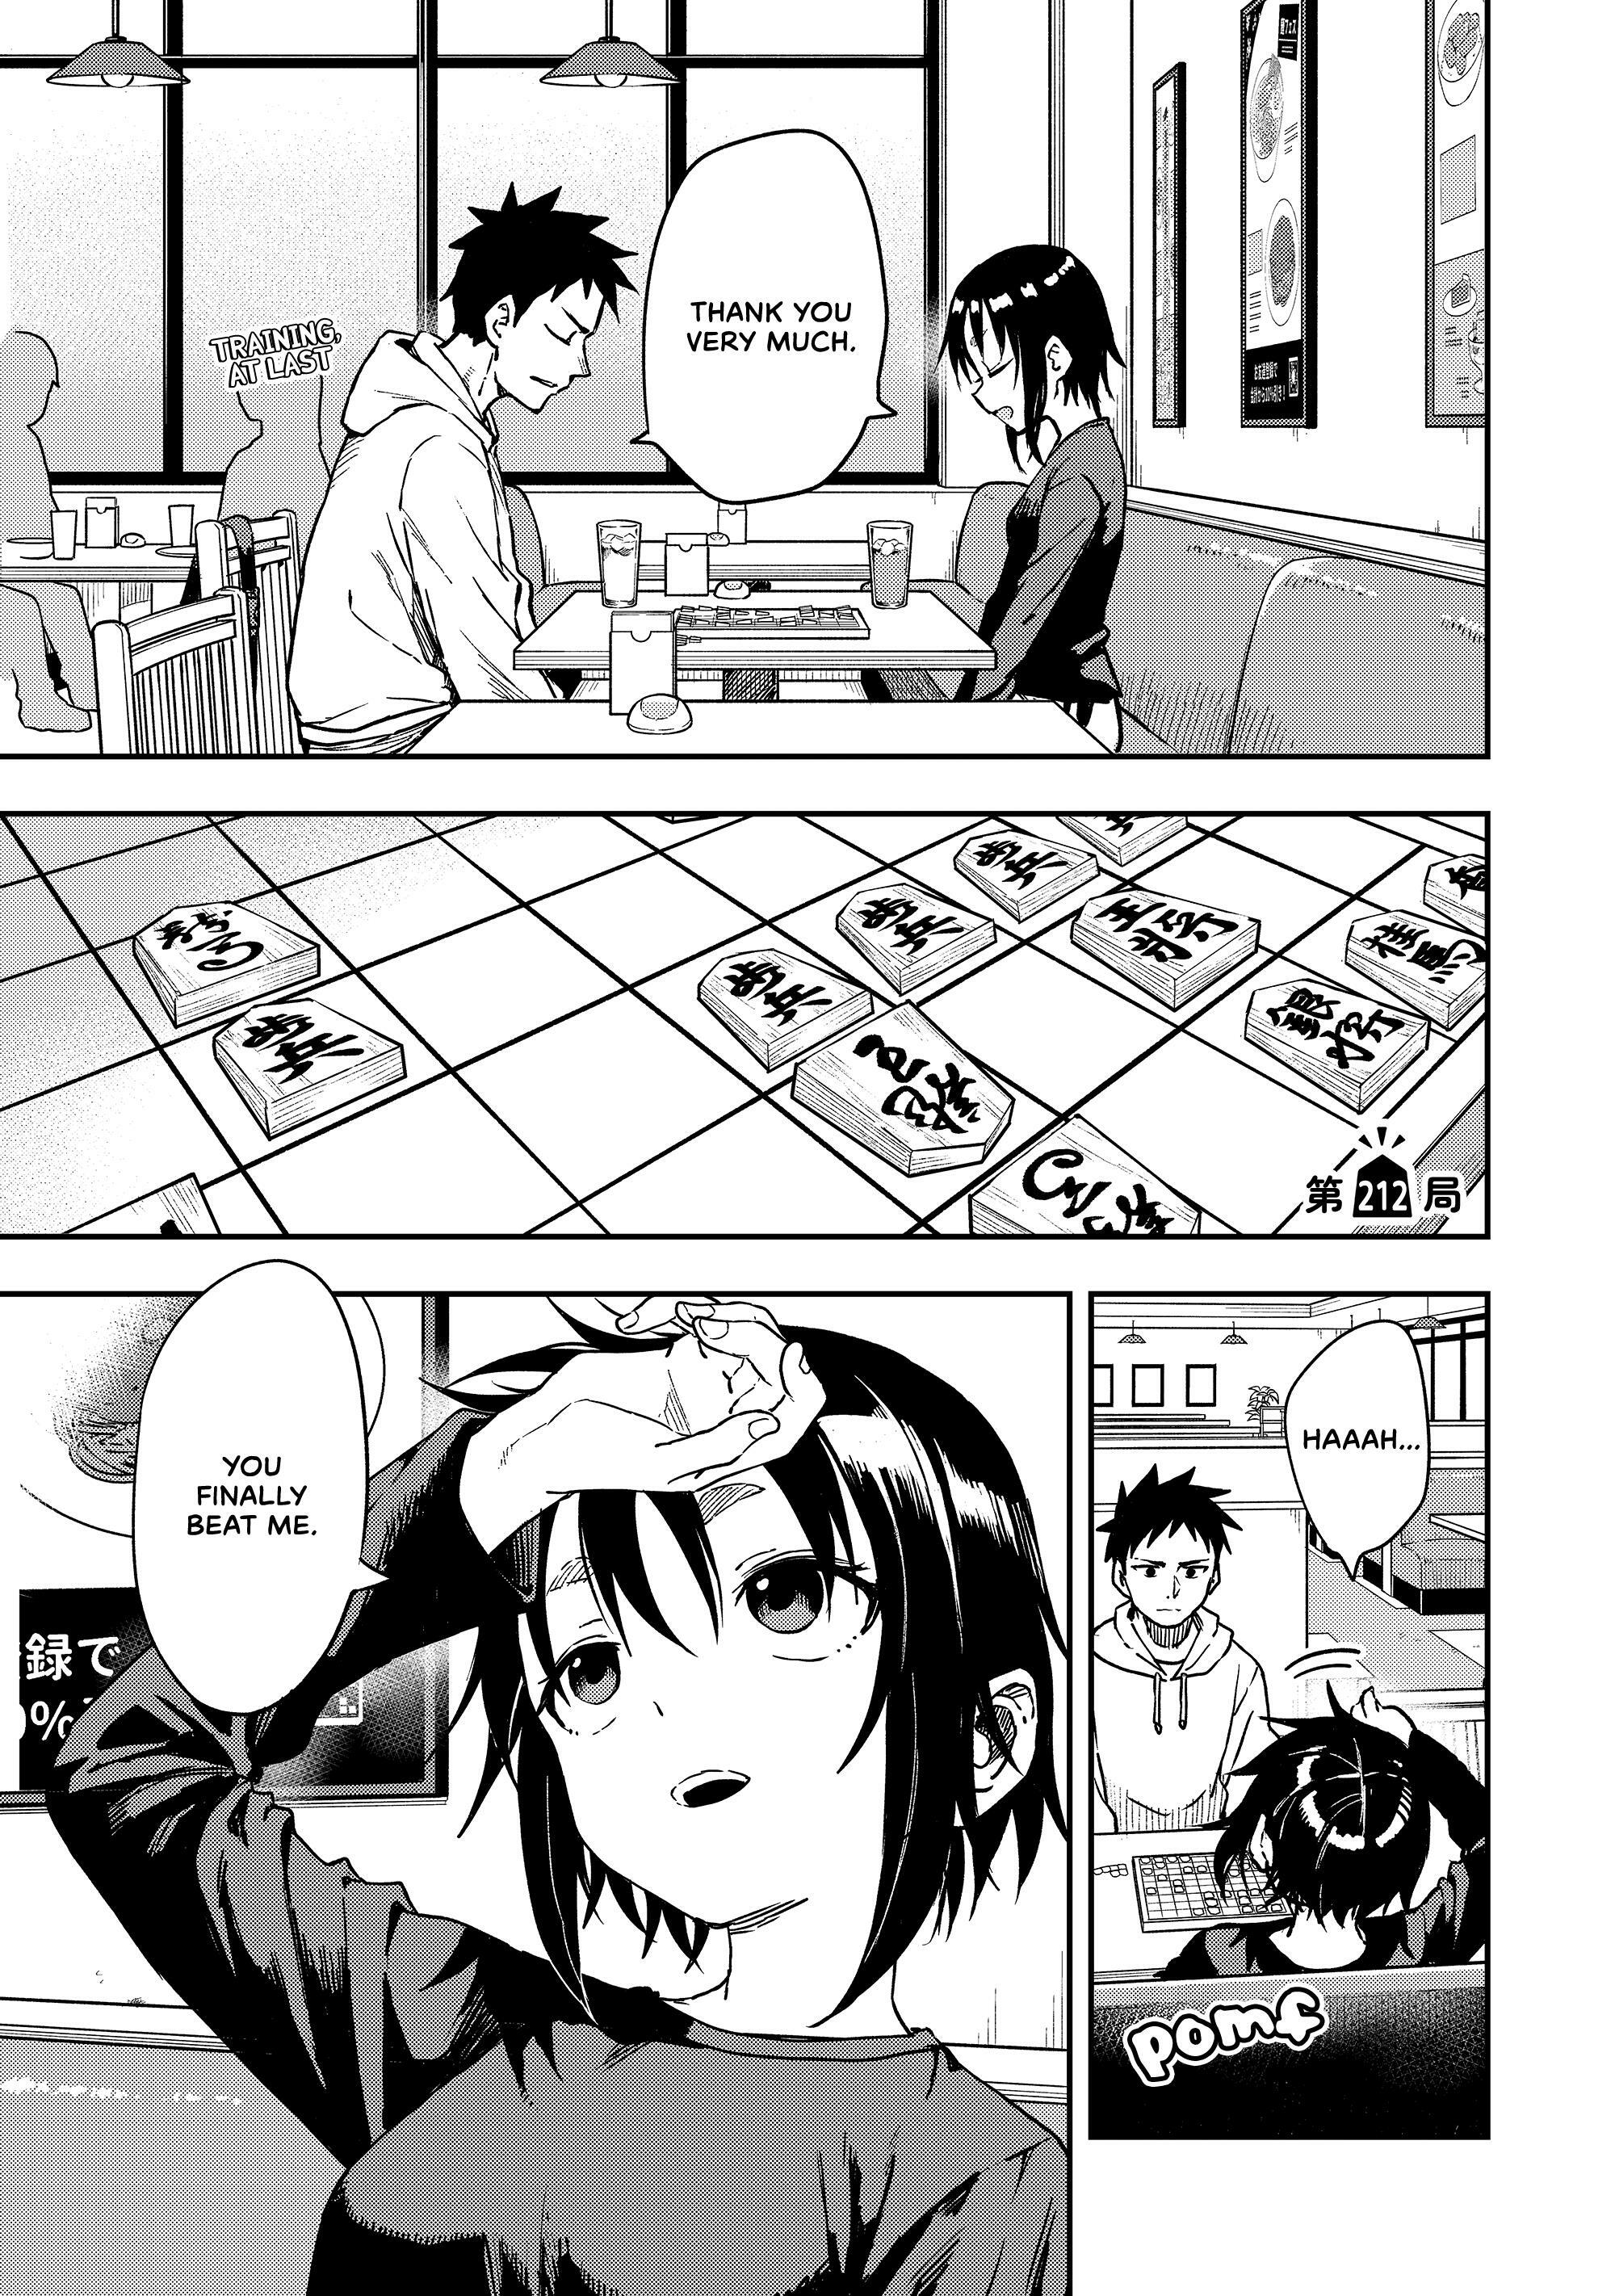 Read Manga Soredemo Ayumu Wa Yosetekuru - Chapter 217